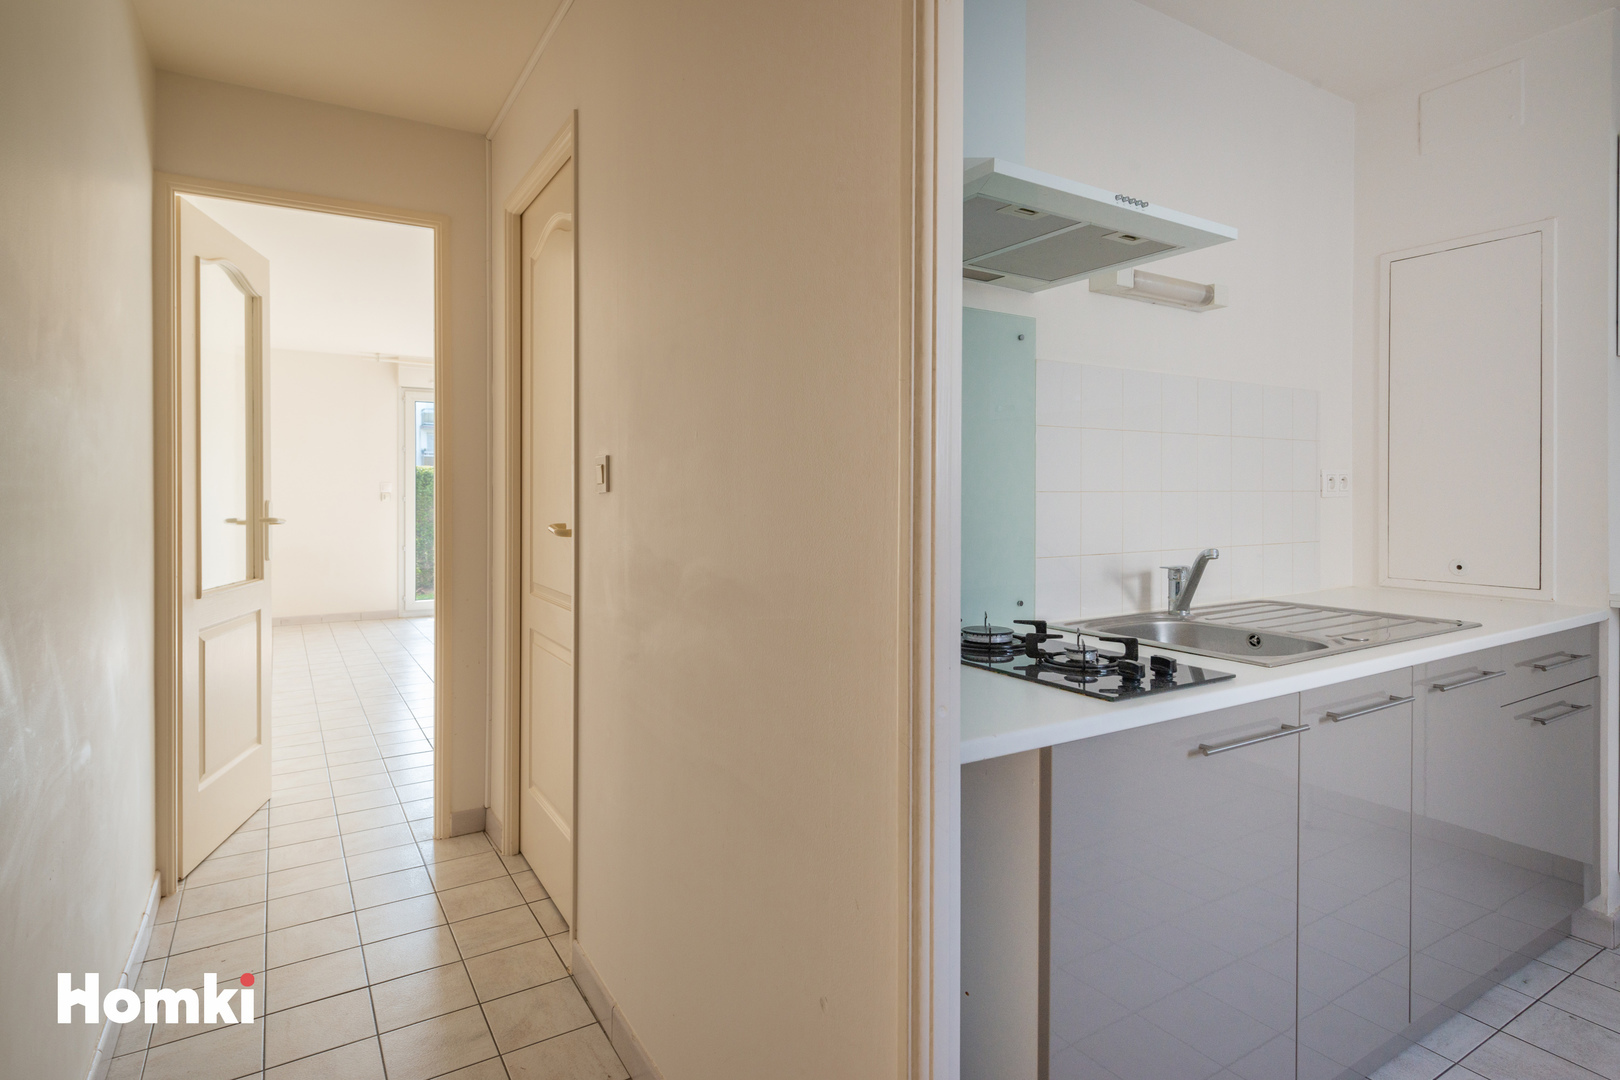 Homki - Vente Appartement  de 34.0 m² à Nantes 44300